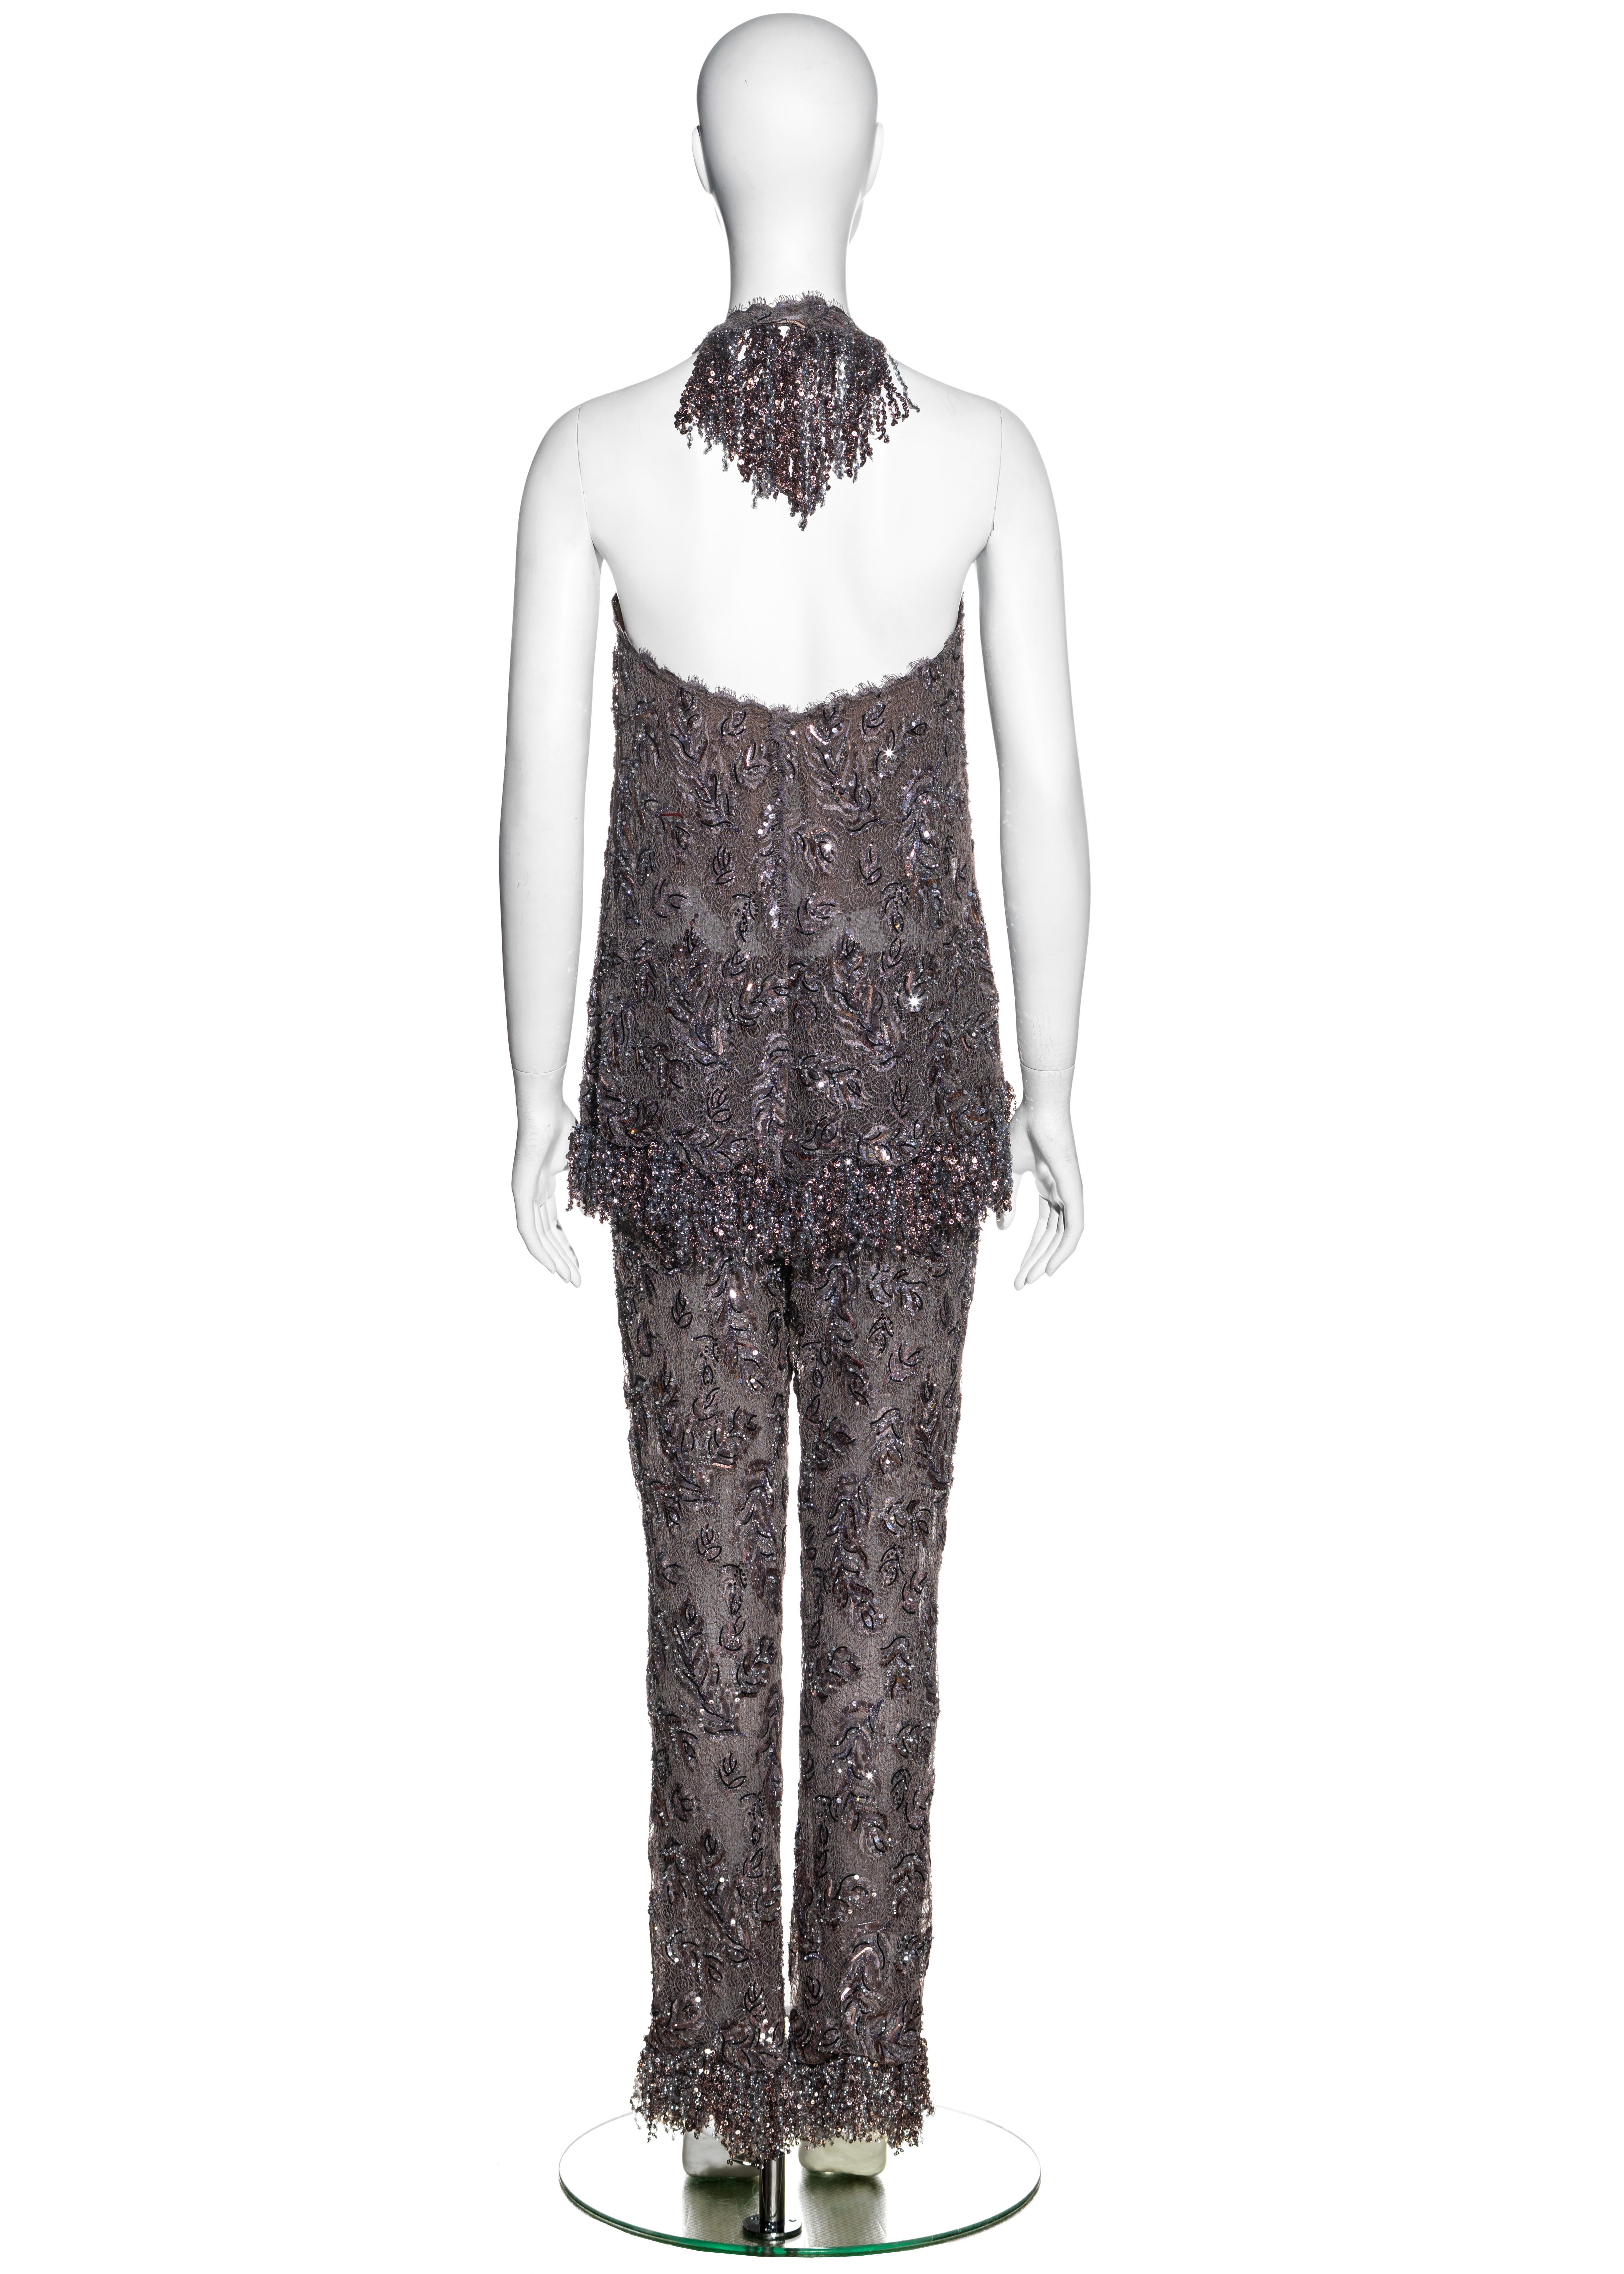 Tailleur pantalon en dentelle brodée mauve haute couture Chanel by Karl Lagerfeld, A/H 2002 2